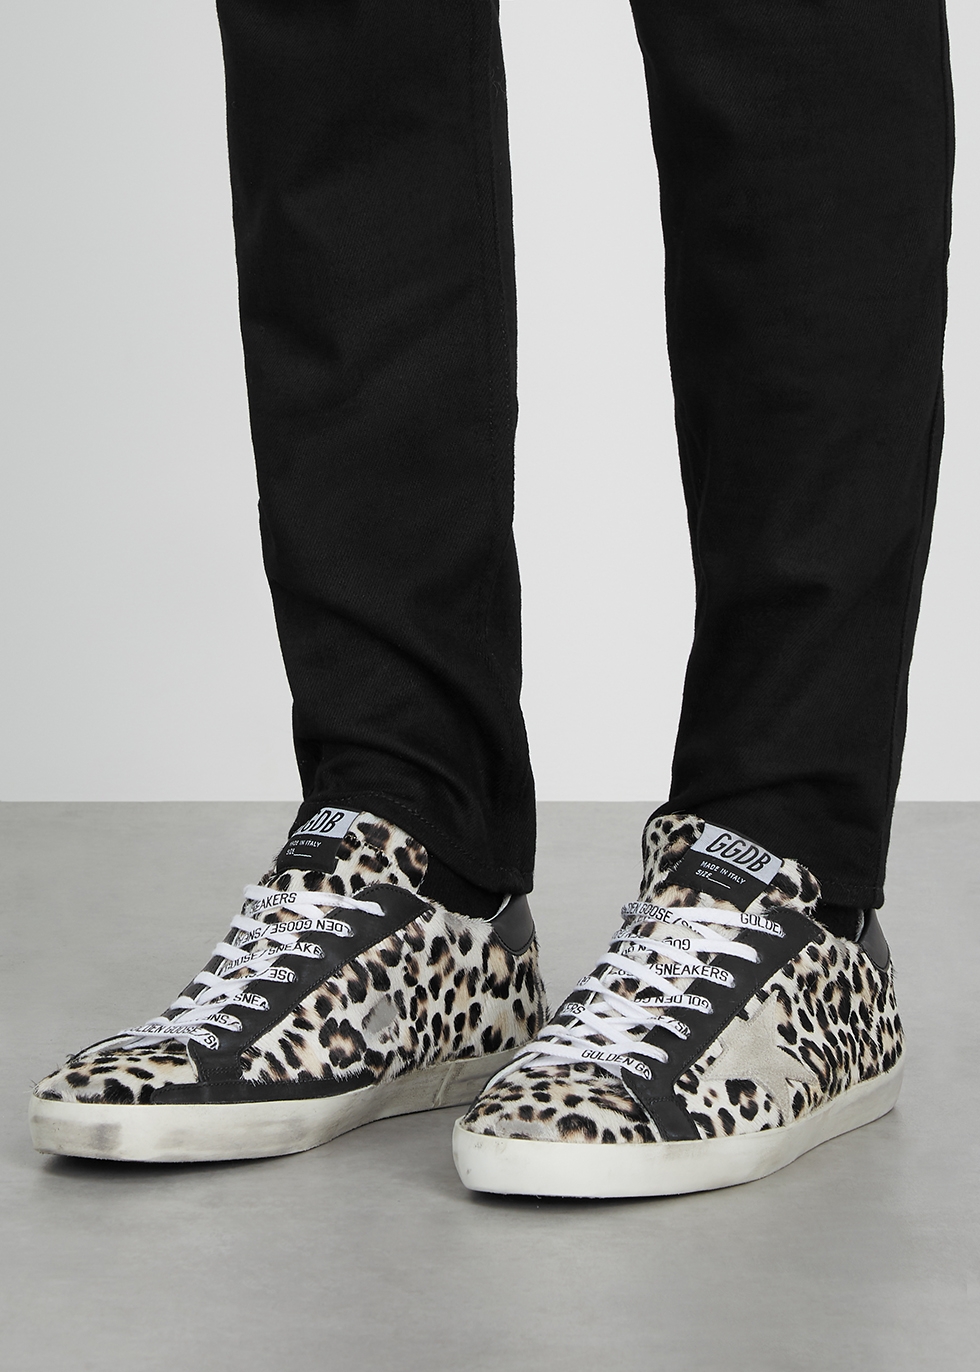 leopard print calf hair shoes